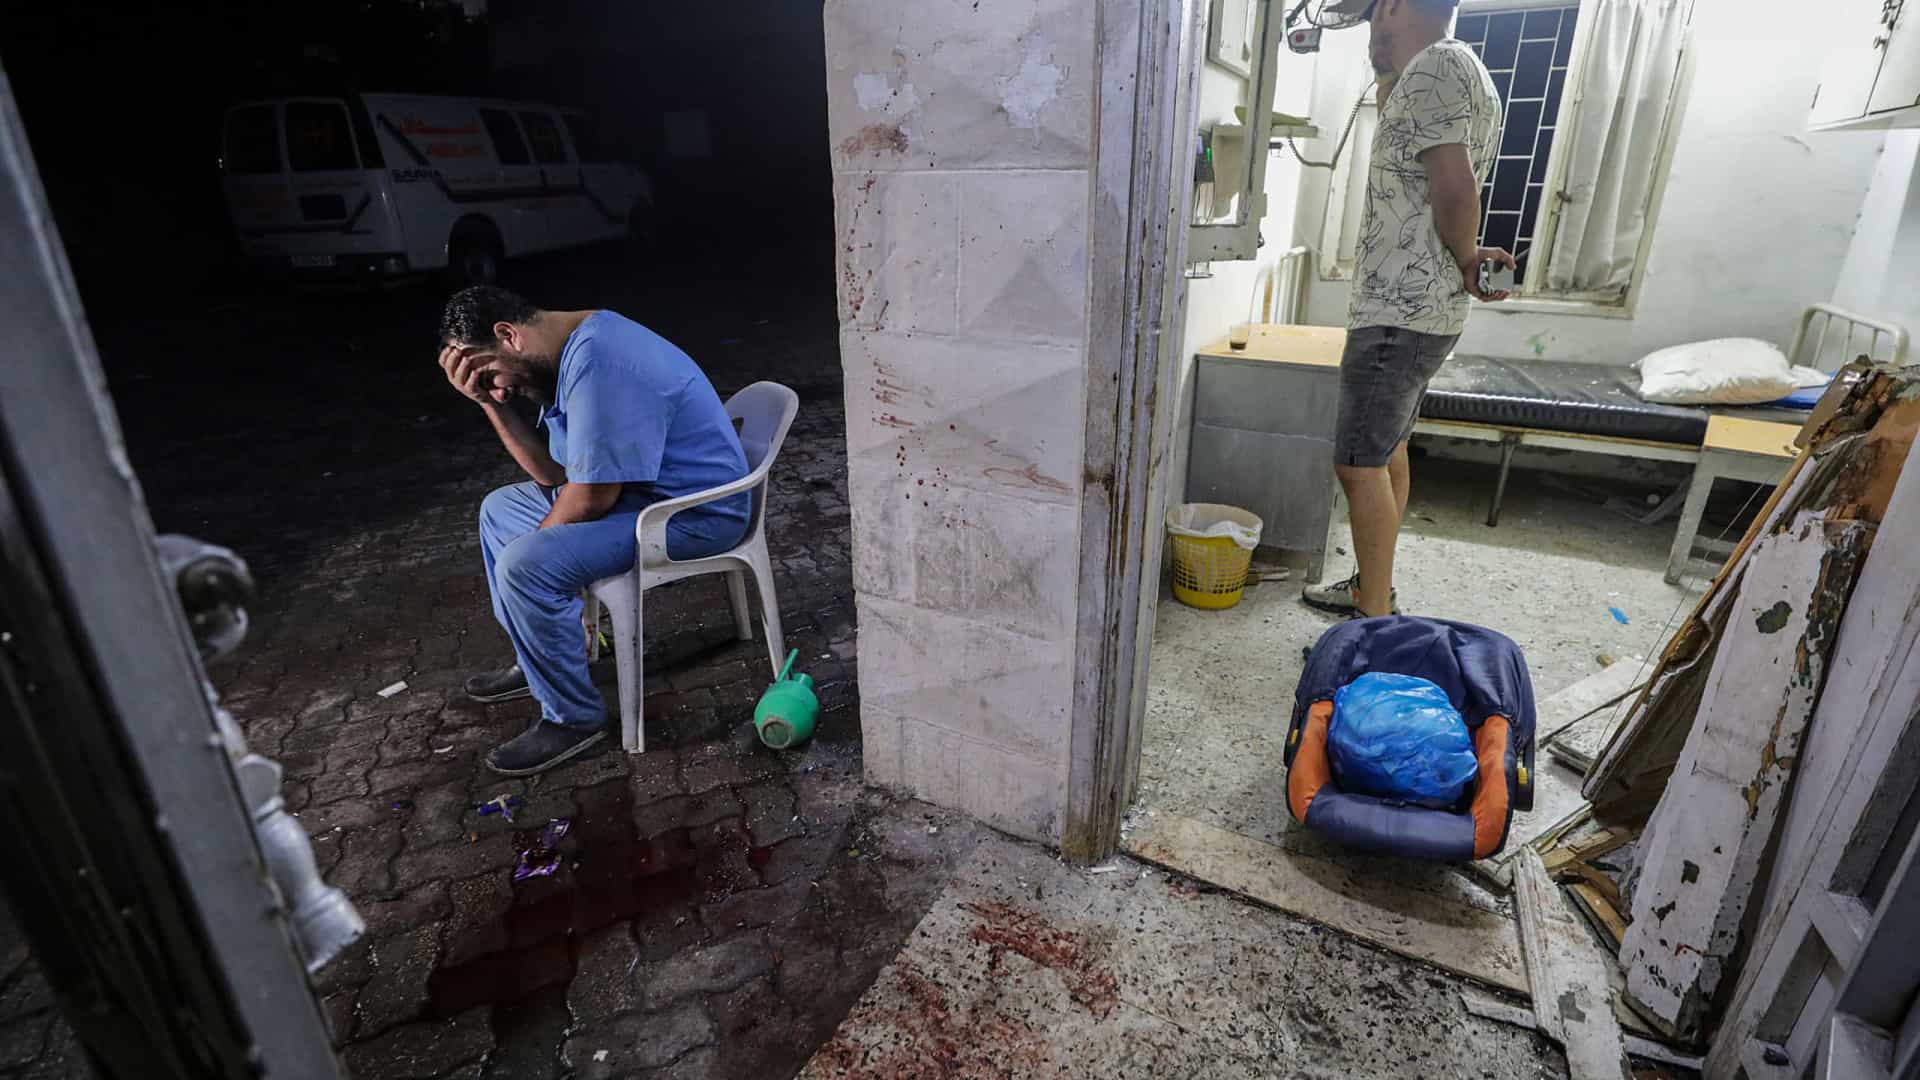 Hamas acusa Israel de atacar hospital em Gaza